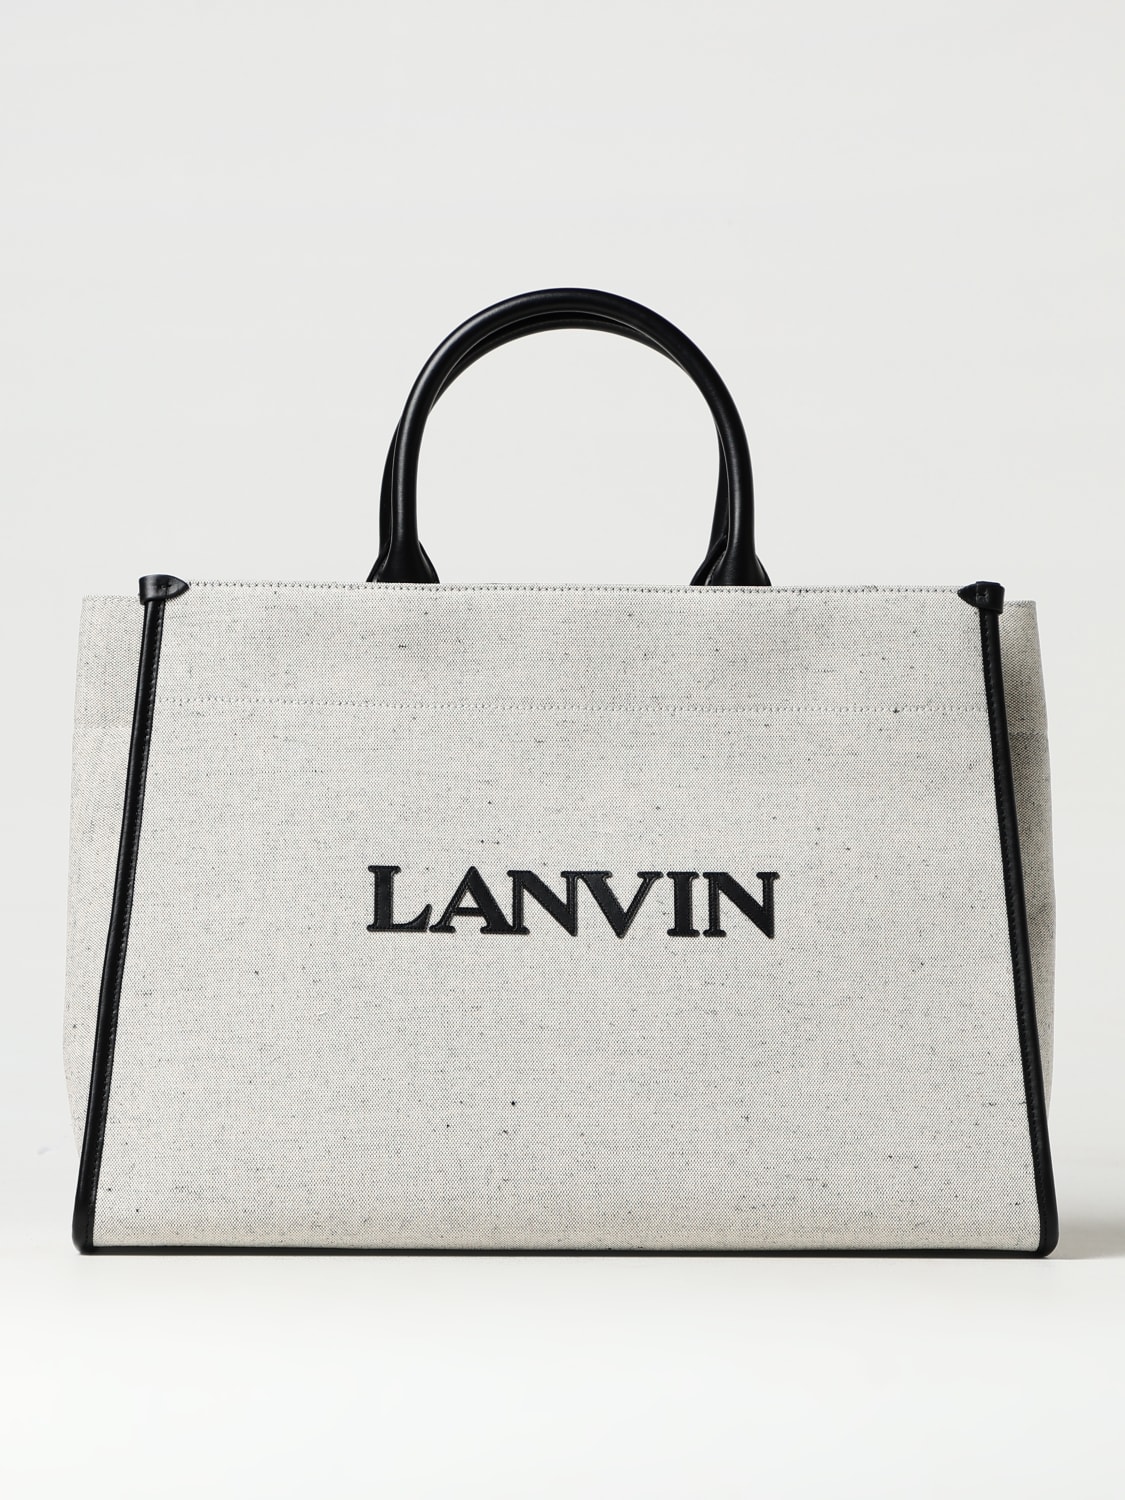 Lanvin embroidered-logo tote bag - Black